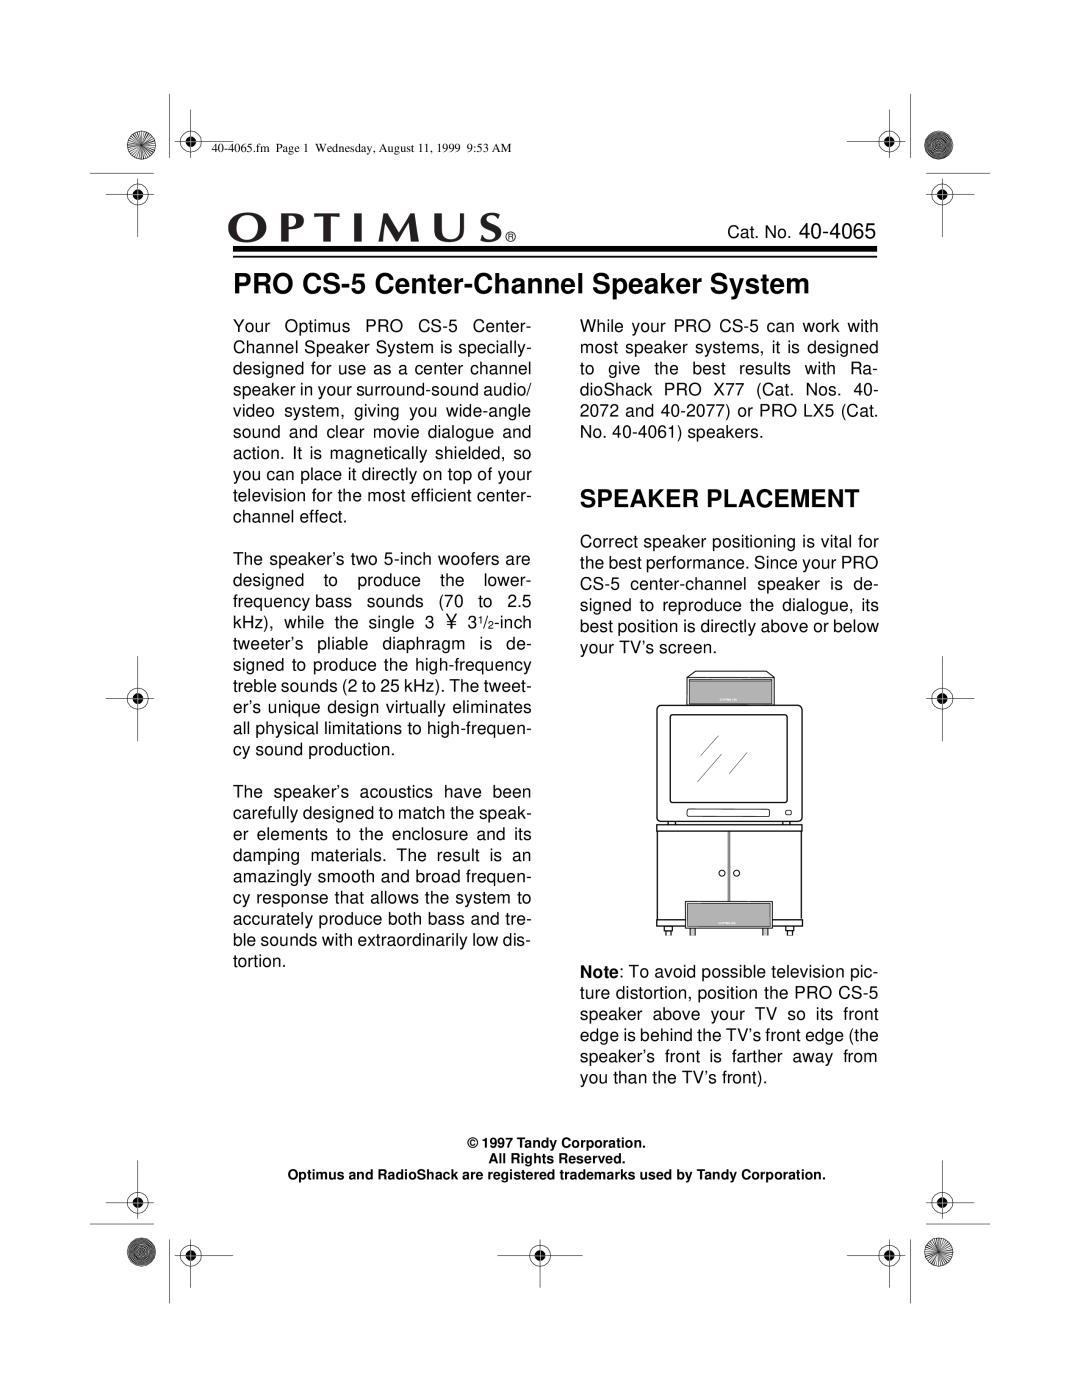 Optimus manual Speaker Placement, PRO CS-5 Center-ChannelSpeaker System 